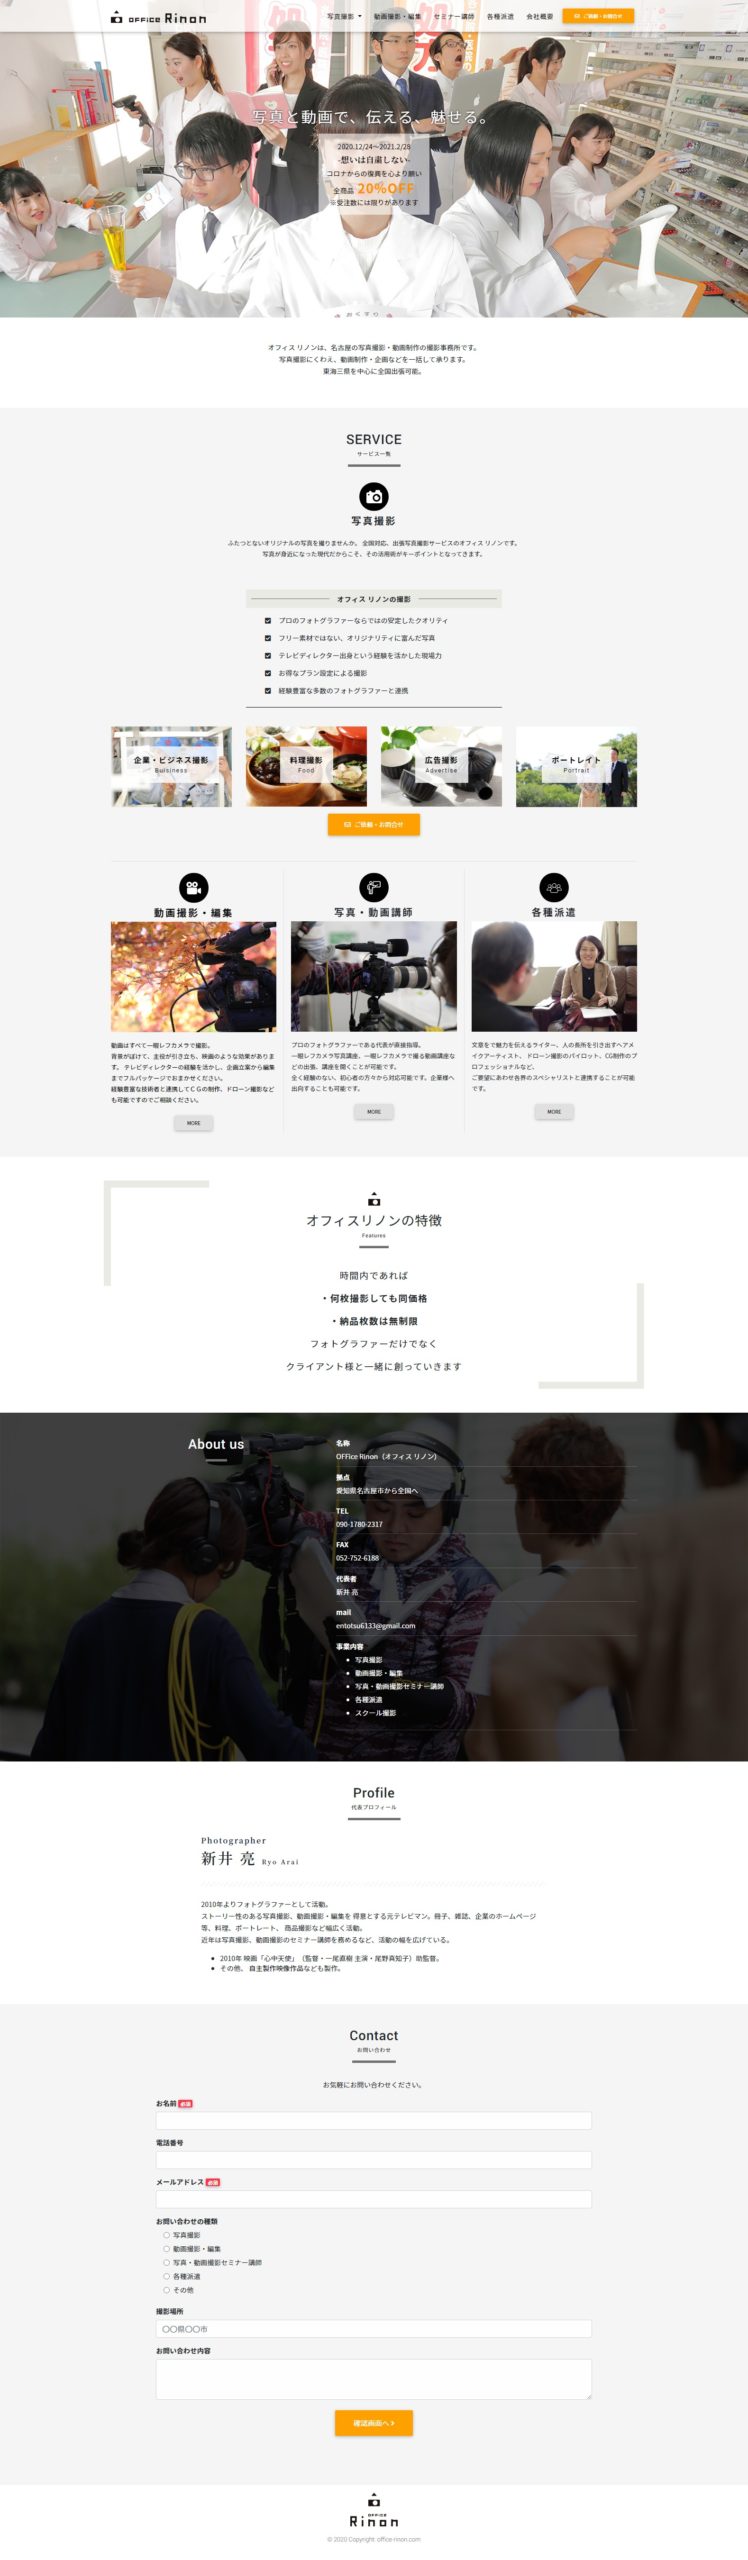 名古屋の撮影・動画制作会社のホームページ